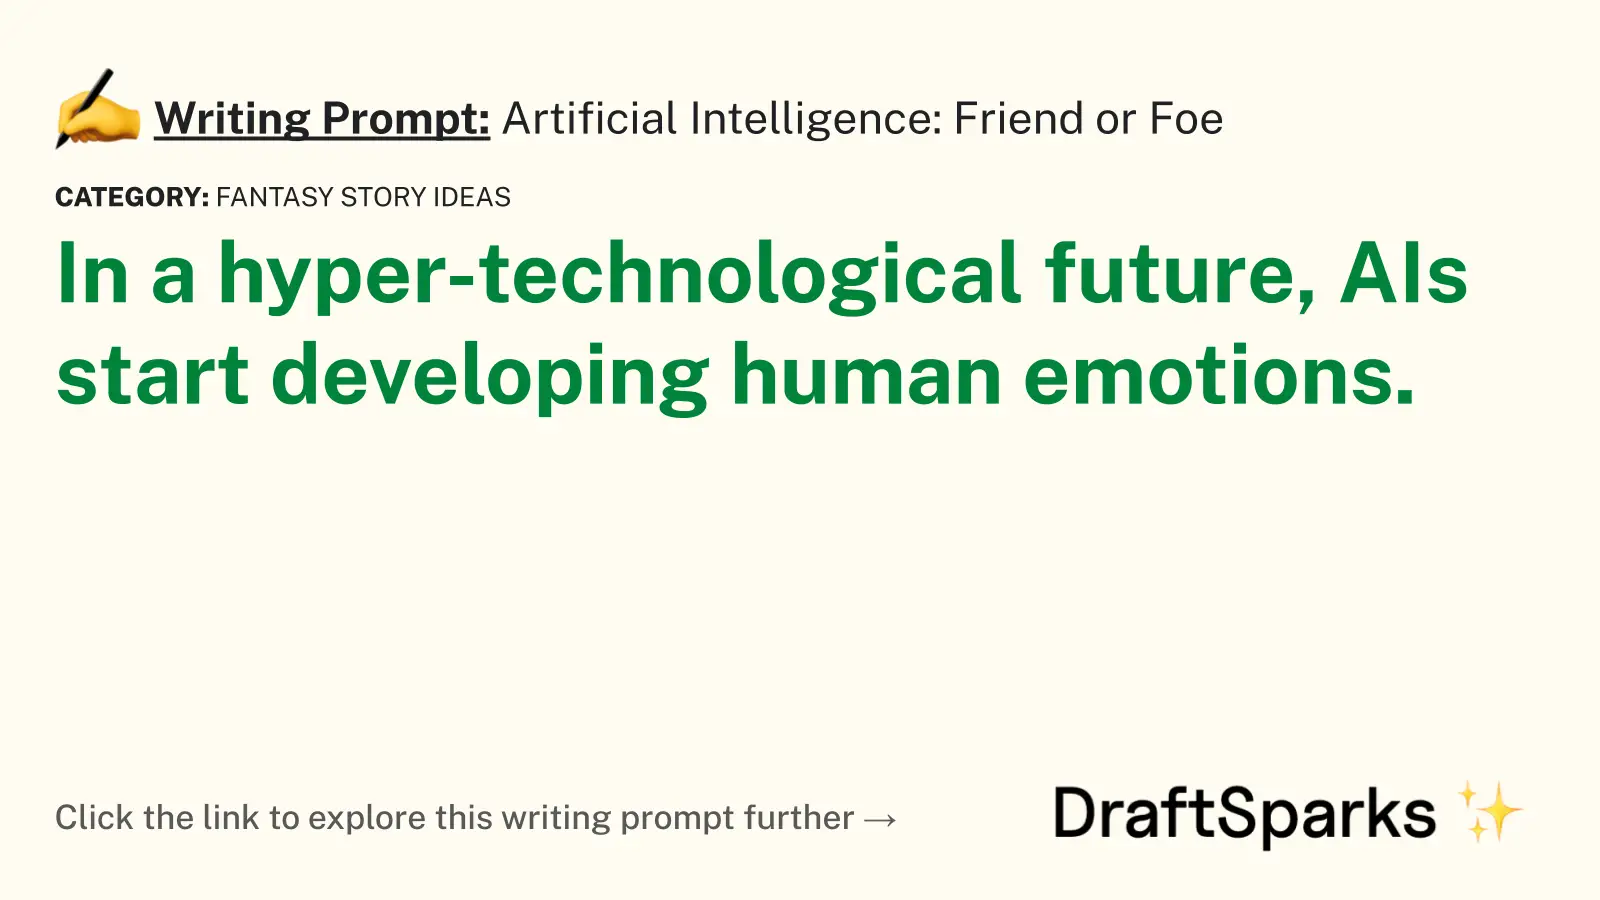 Artificial Intelligence: Friend or Foe